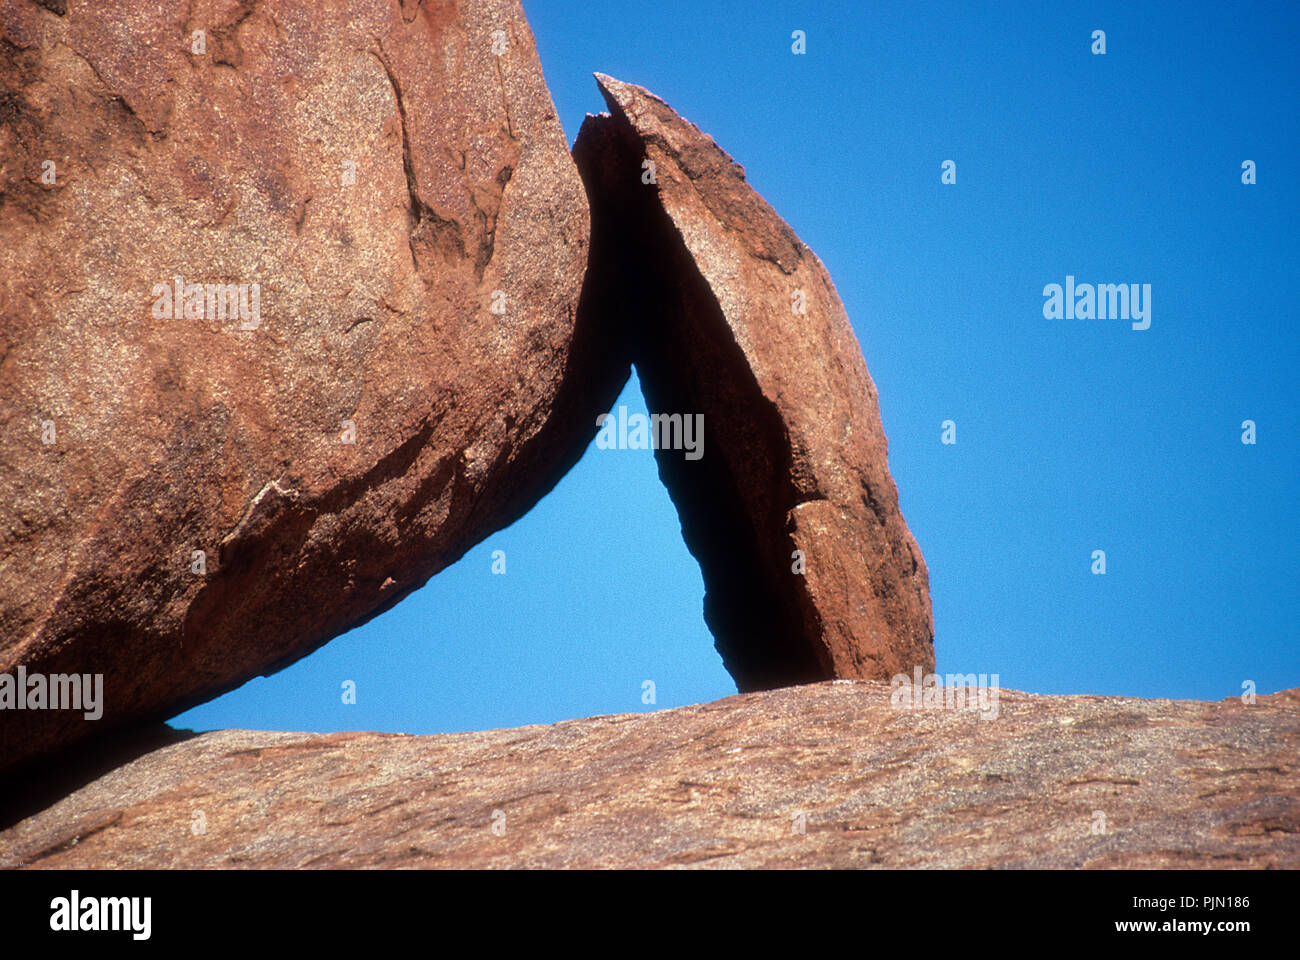 Die Olgas - Felsformation im 'Roten Zentrum' im australischen Outback Stockfoto